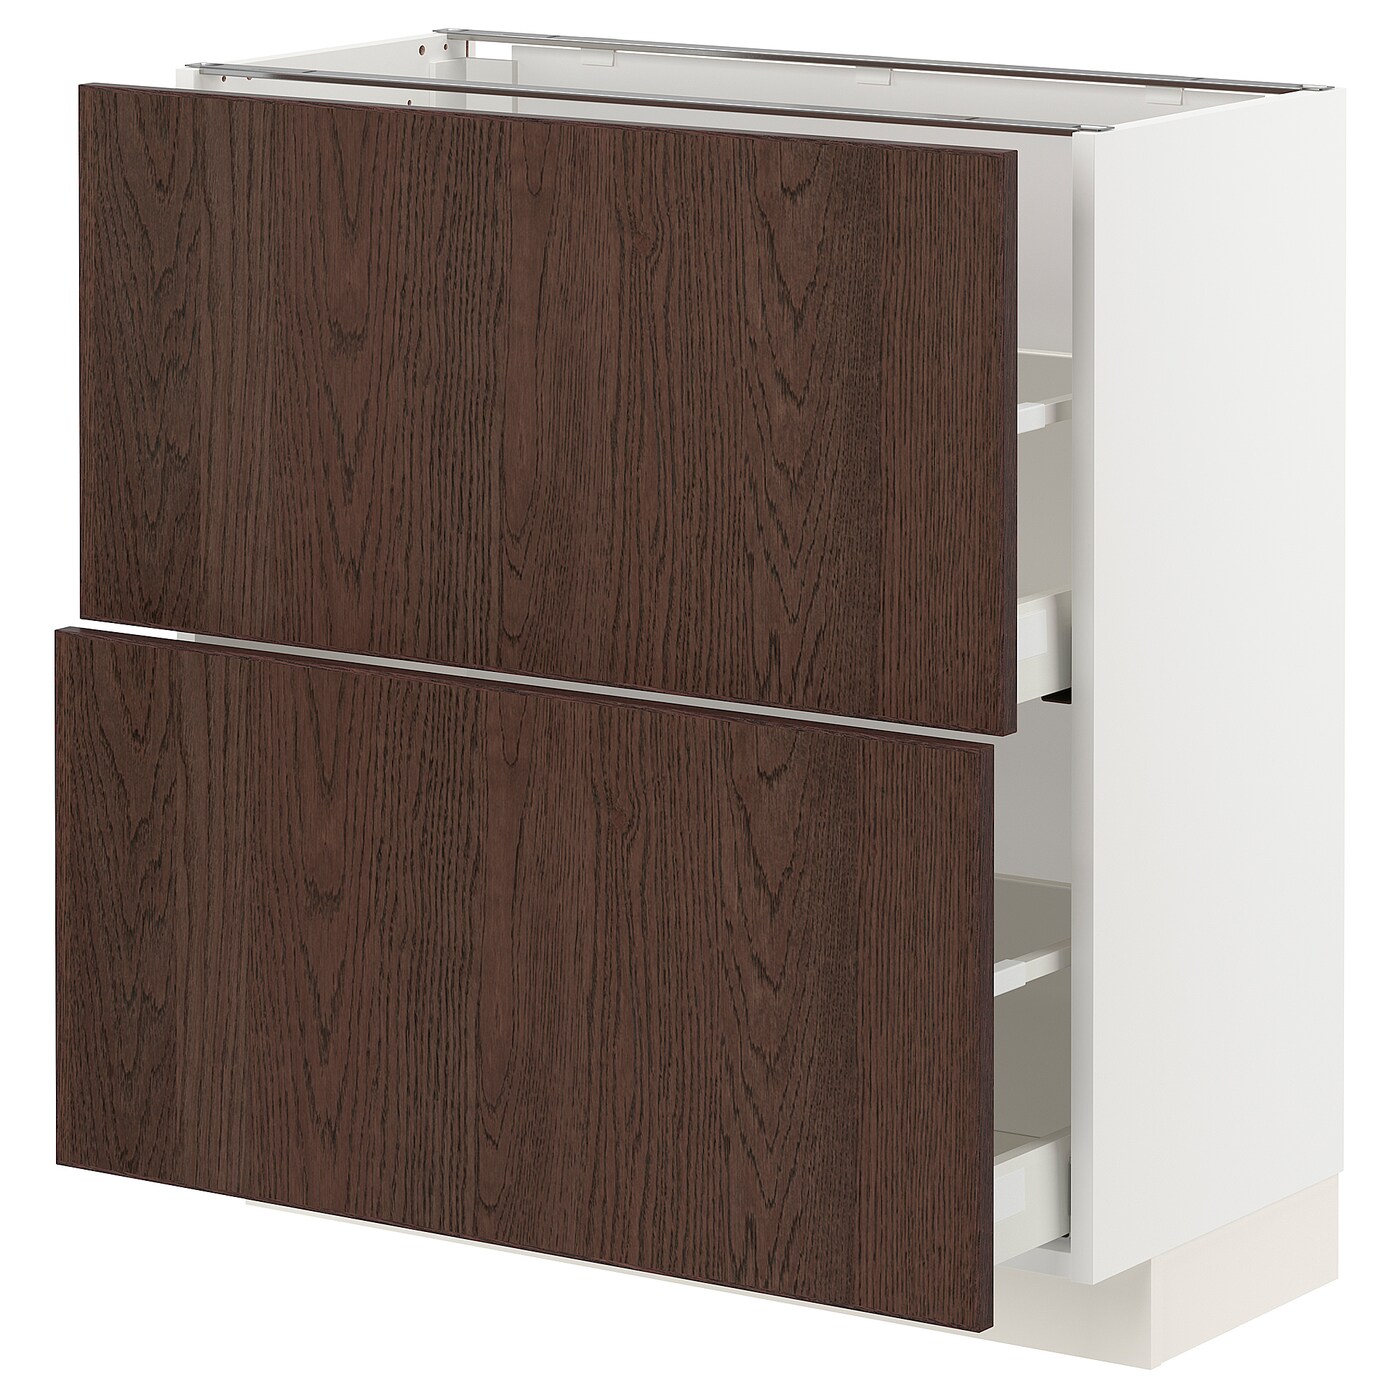 Напольный шкаф - IKEA METOD MAXIMERA, 88x39x80см, белый/темно-коричневый, МЕТОД МАКСИМЕРА ИКЕА